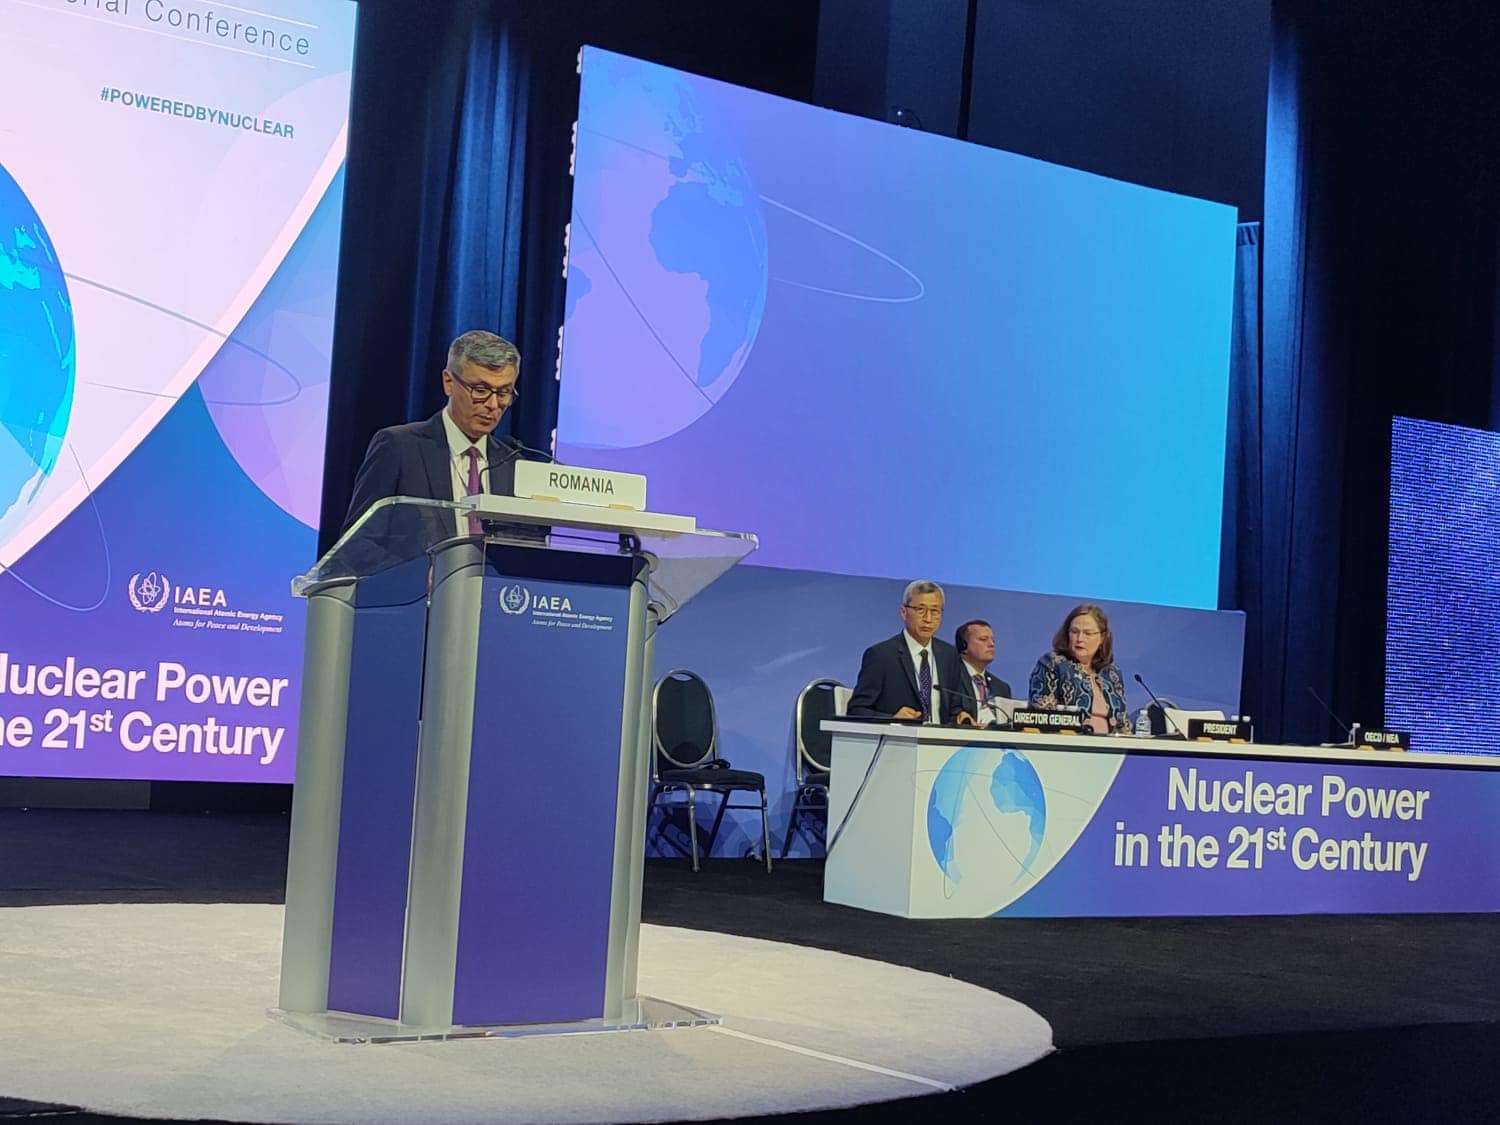 Virgil Popescu, la Washington: Pe termen lung, trebuie să începem să ne gândim la relansarea economică a Europei / Trebuie să redeschidem şi să consolidăm discuţia despre energia nucleară